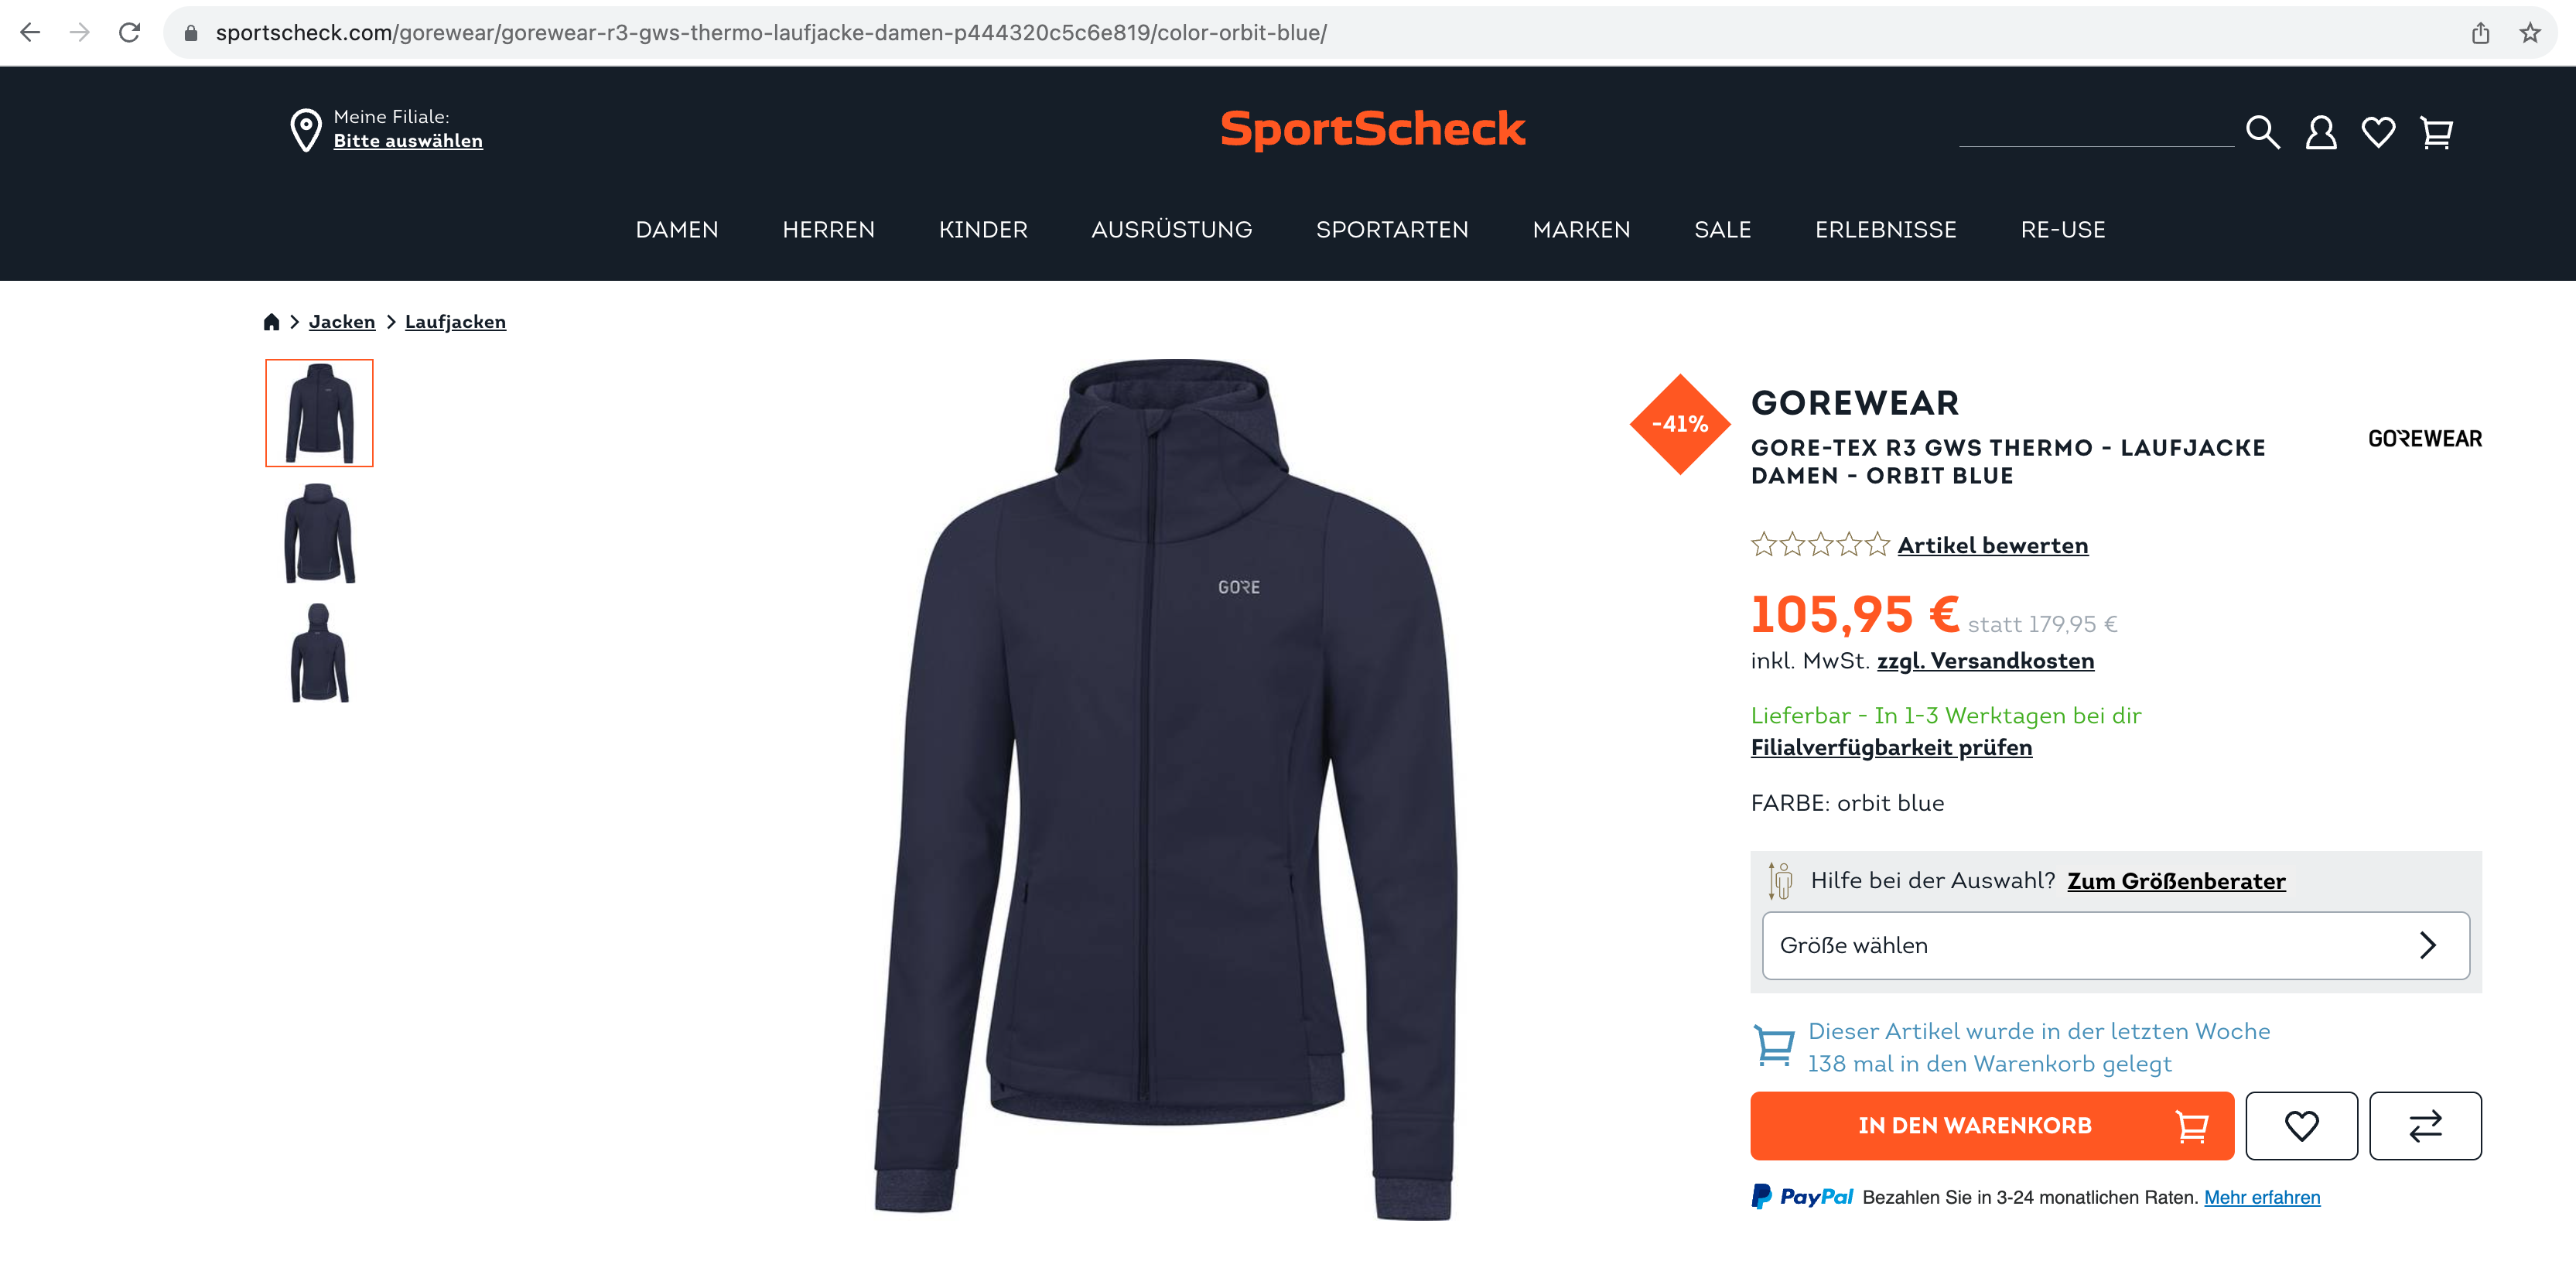 Eine Laufjacke der Marke Gorewear auf sportscheck.com. In der URL erkennt man, dass diese unter dem Gorewear Markenverzeichnis aufgestellt ist.